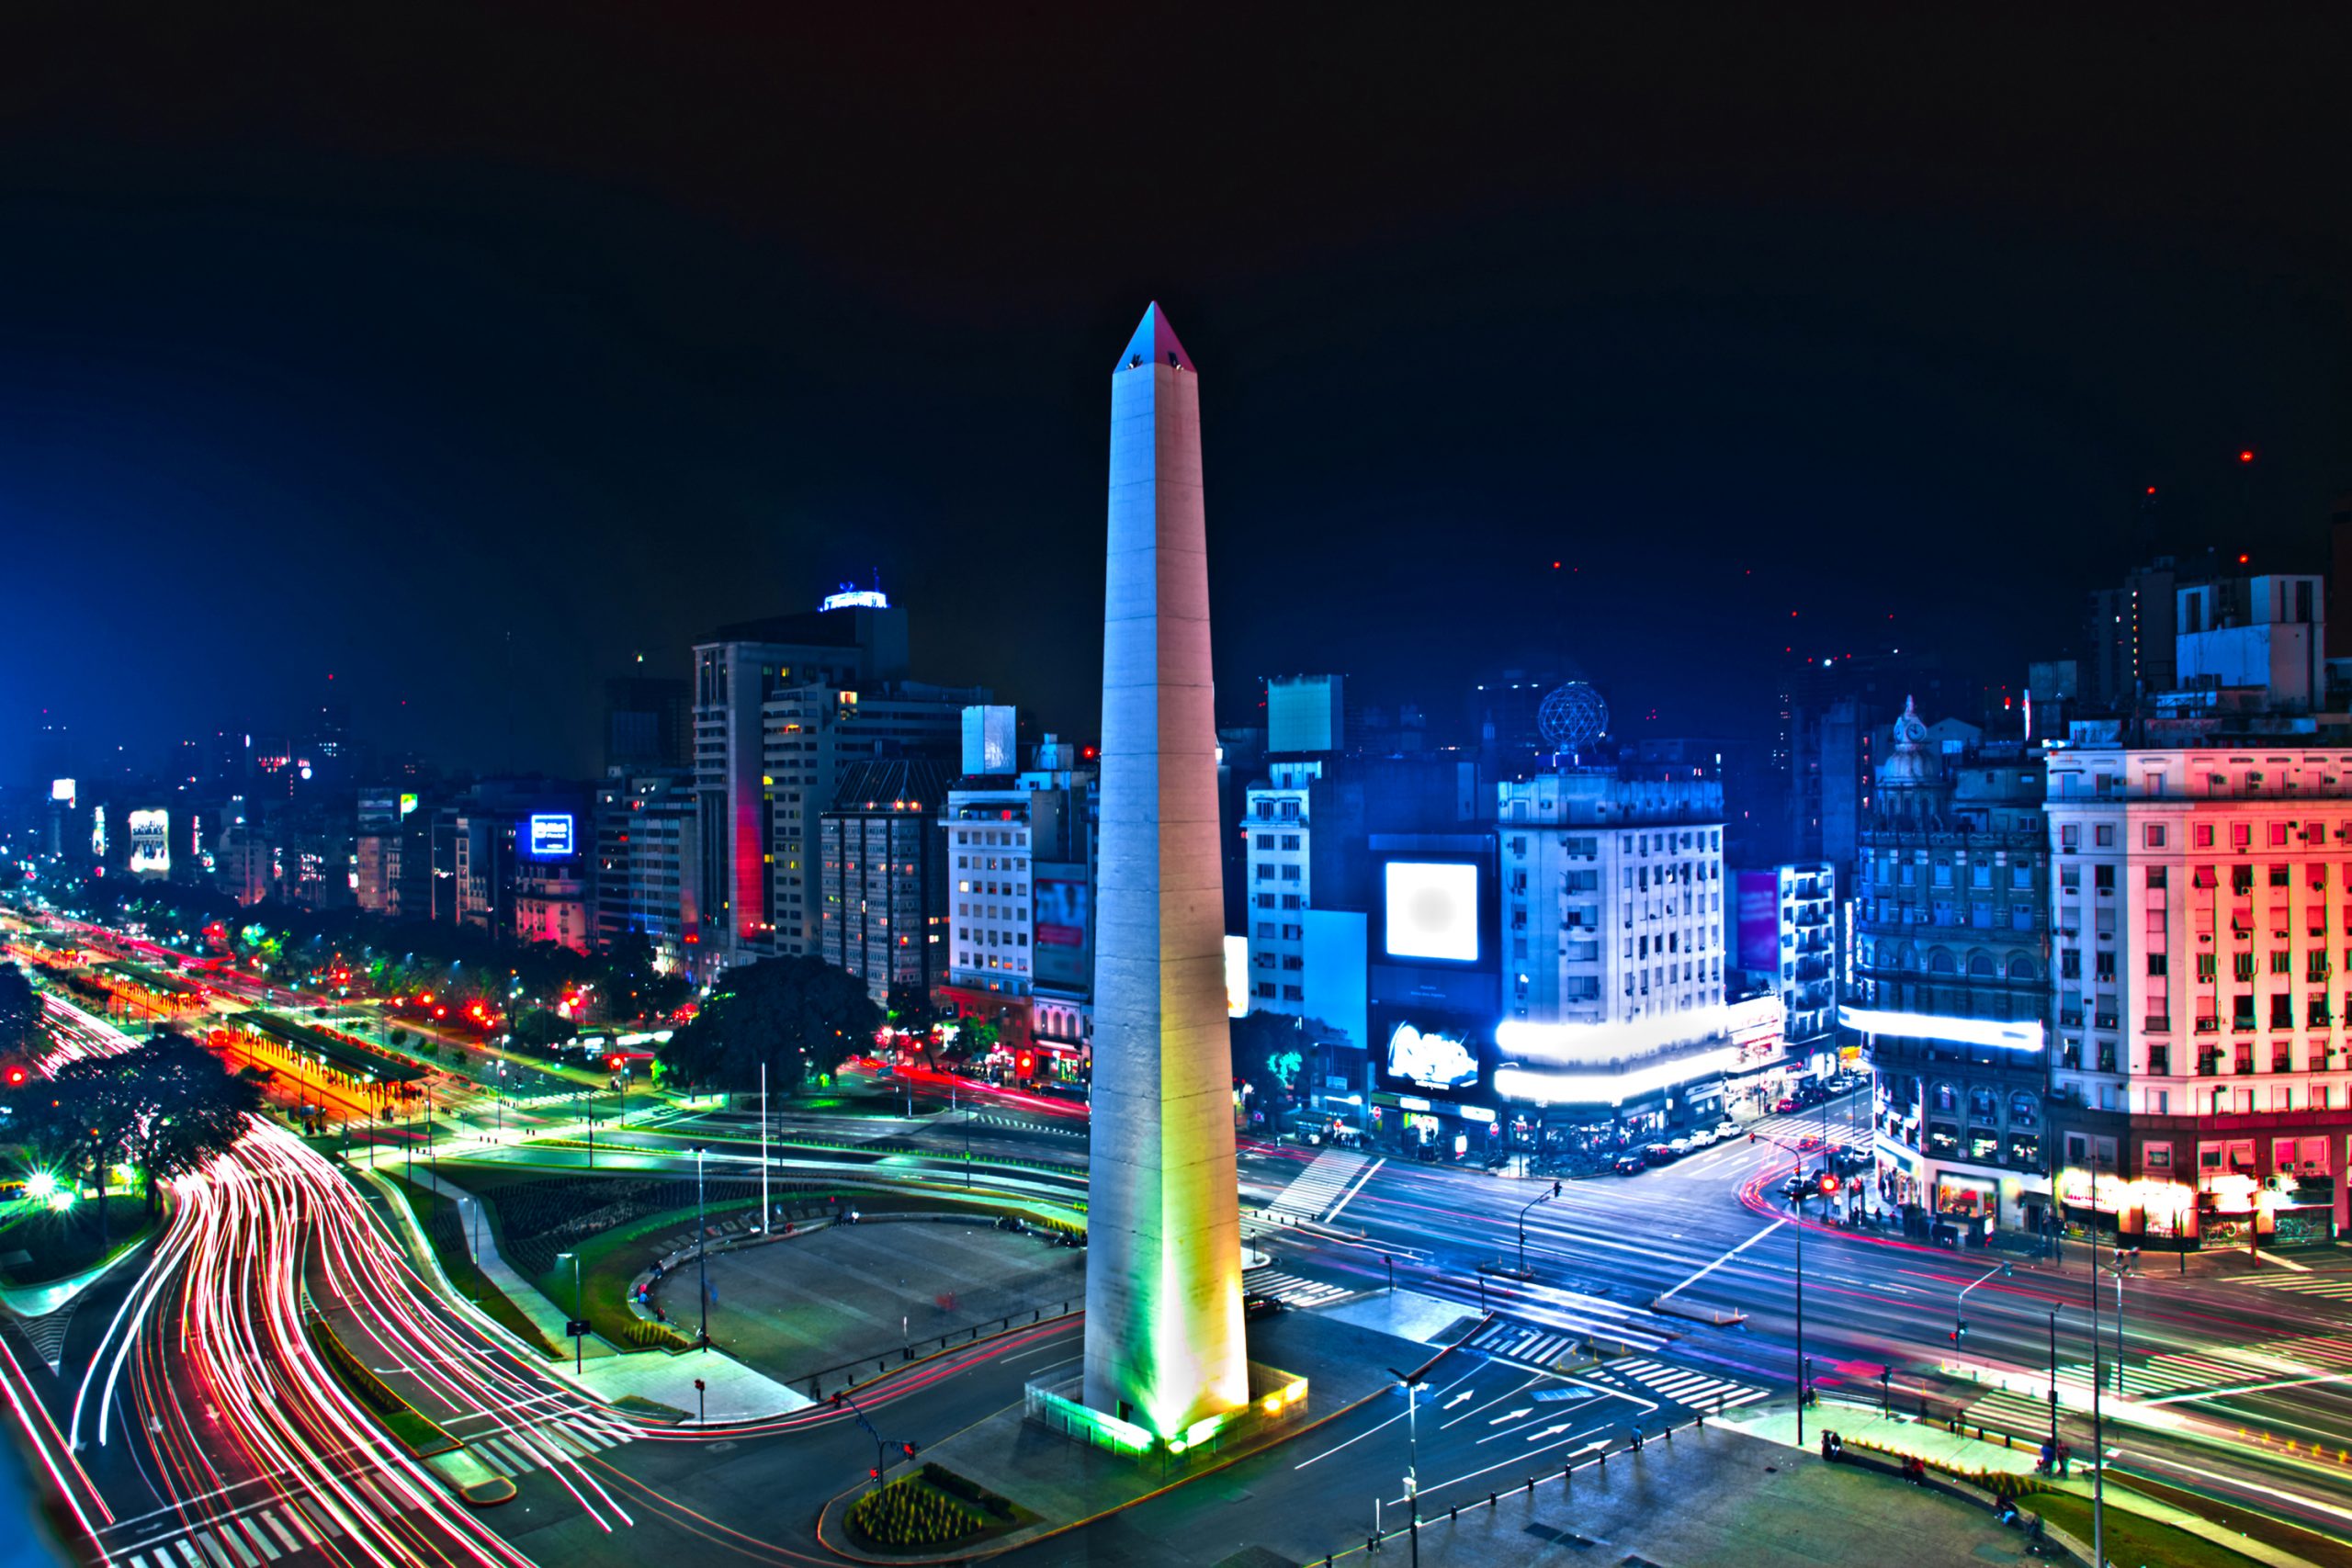 Страстное танго, сочные стейки, невероятная архитектура: гайд по удивительному Буэнос-Айресу